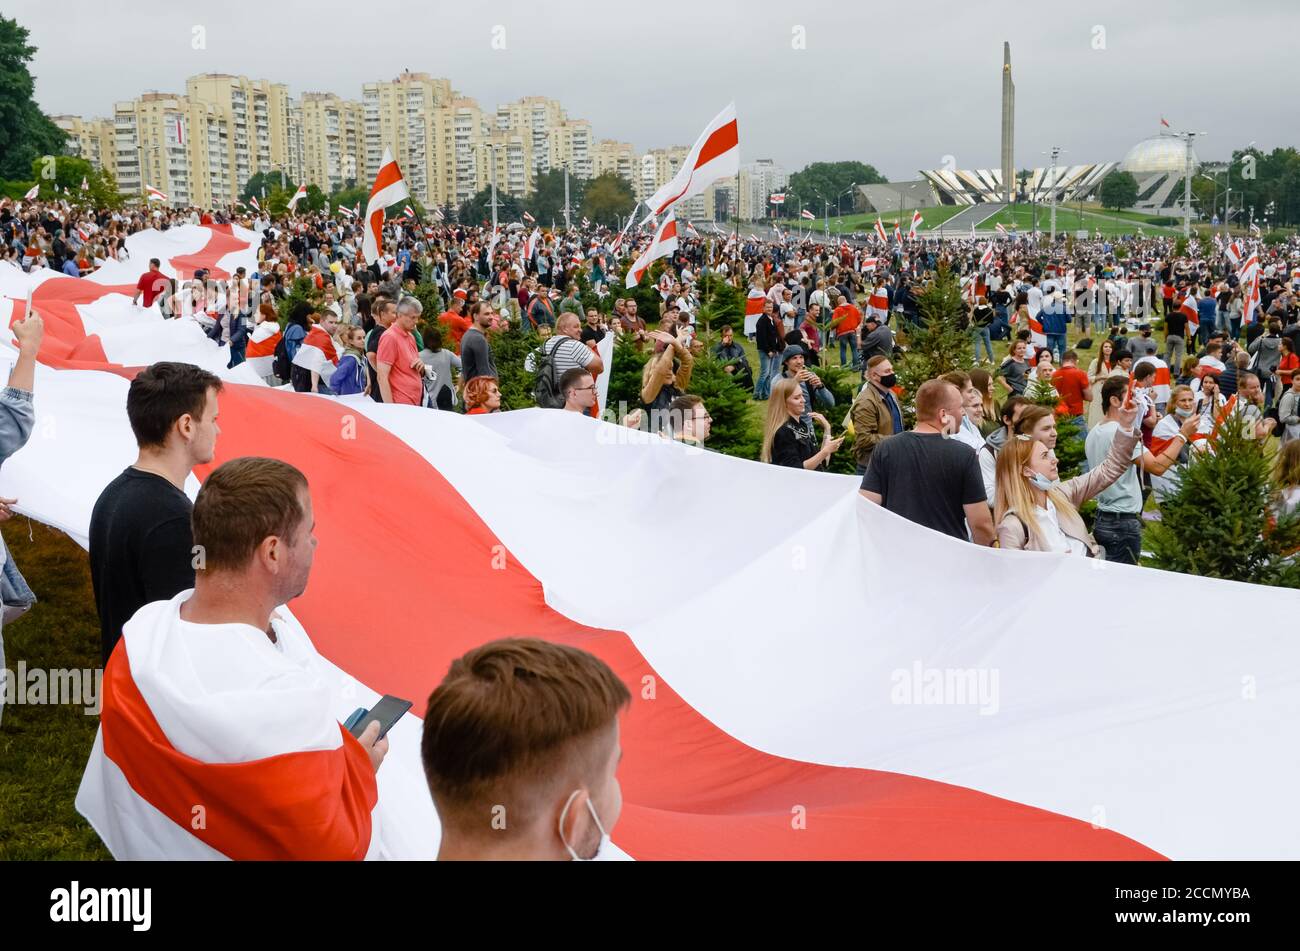 Minsk, Bielorrusia - 16 de agosto de 2020: El pueblo bielorruso participa en protestas pacíficas después de las elecciones presidenciales en Bielorrusia Foto de stock